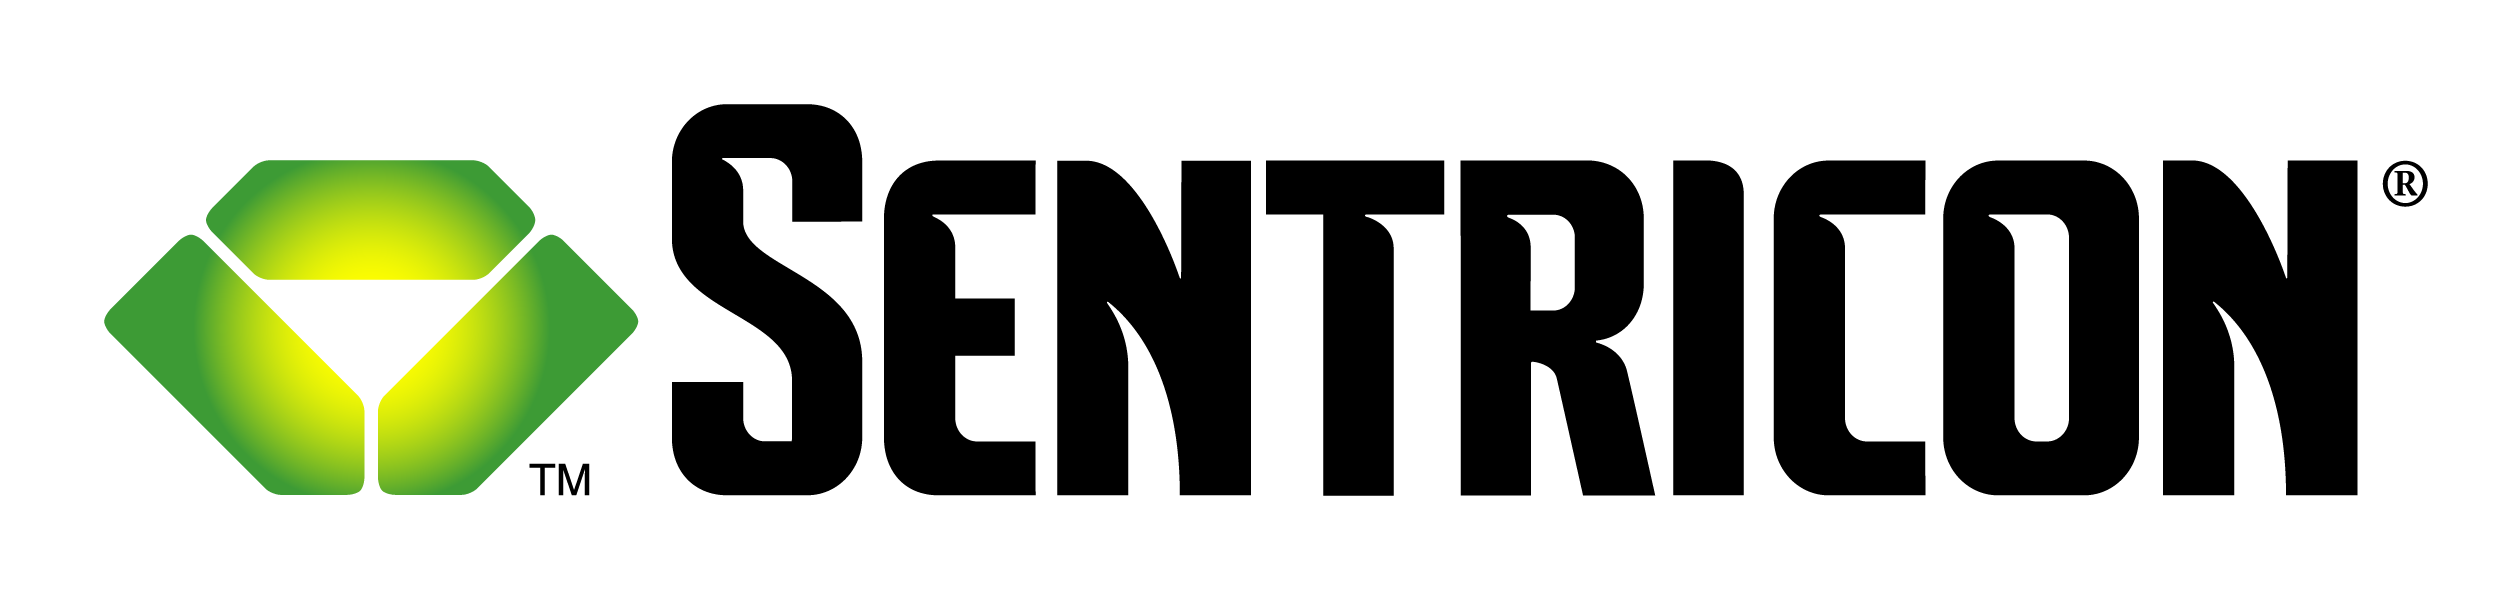 sentricon logo